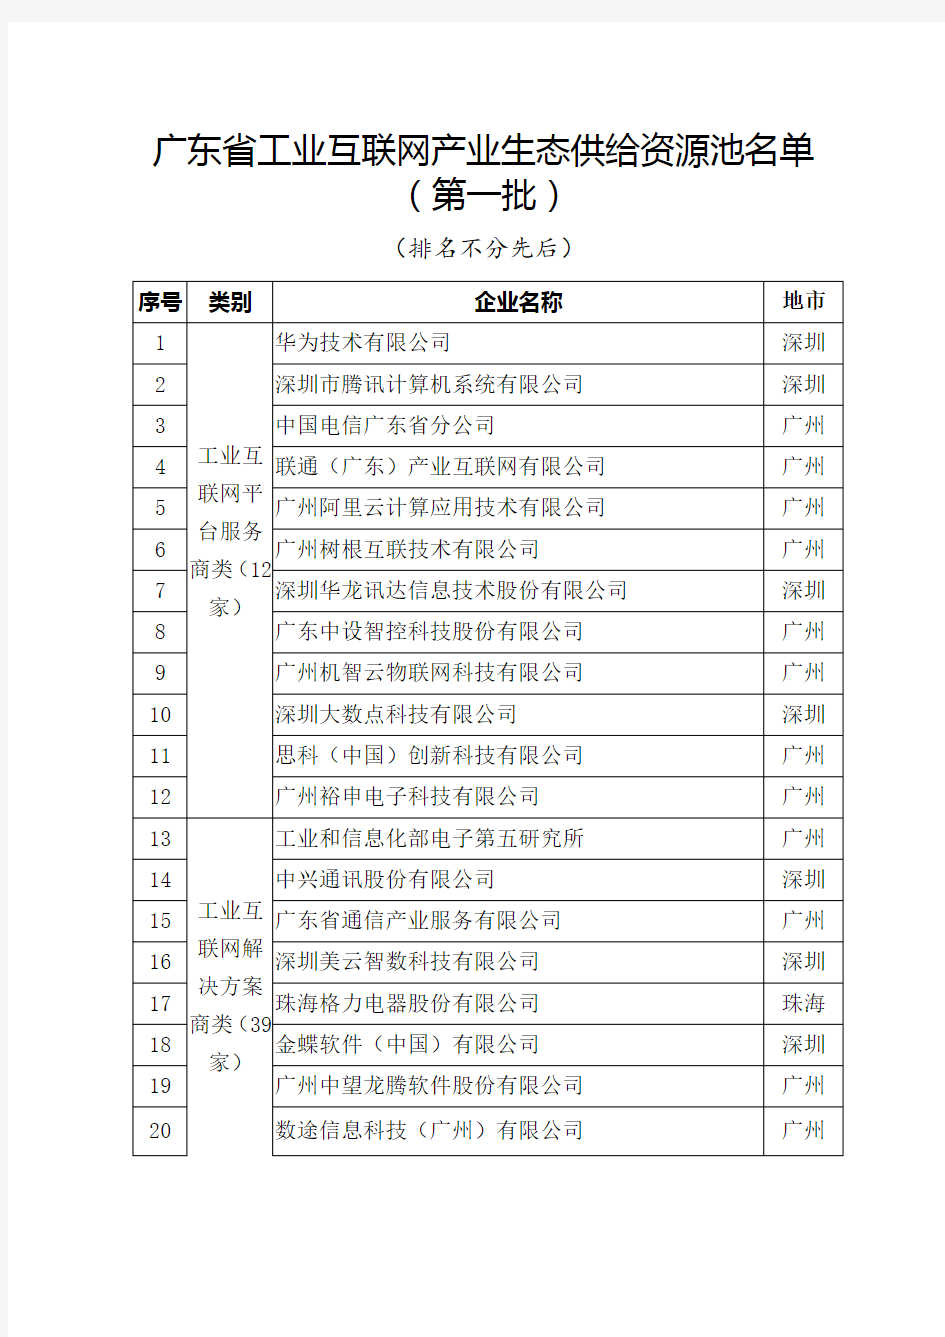 广东省工业互联网产业生态供给资源池名单第一批